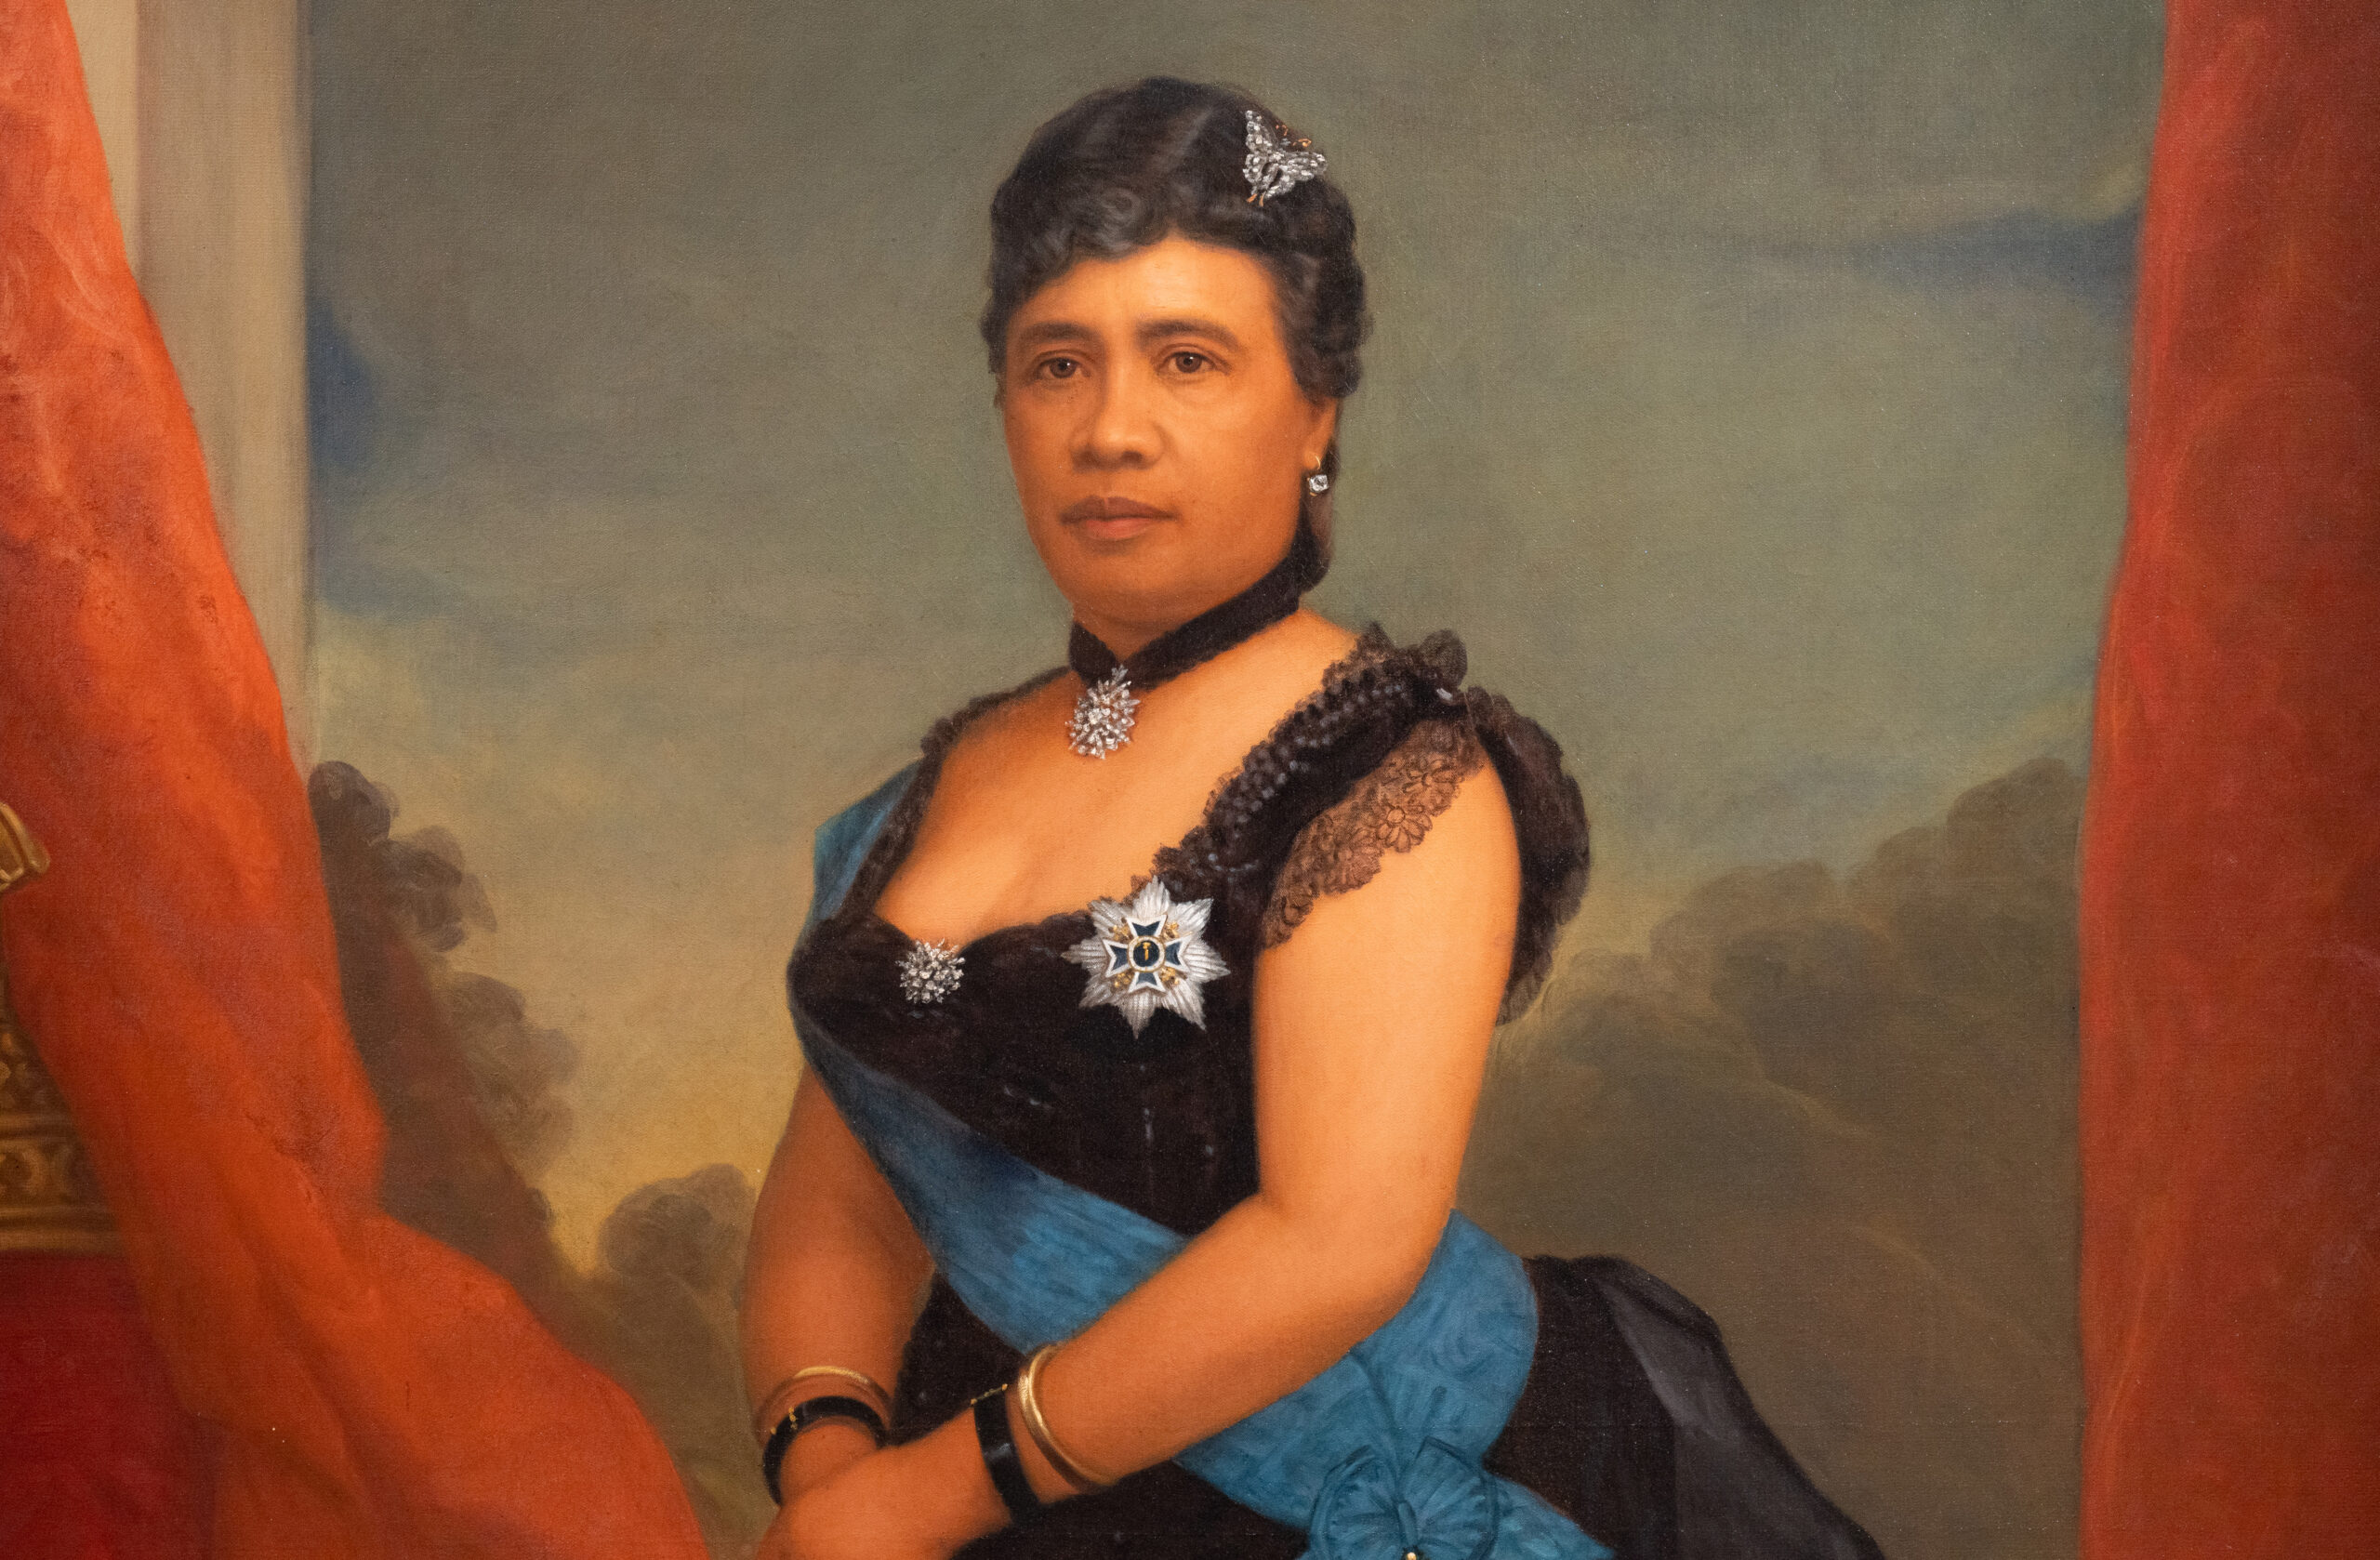 1891 and late 19th century<br>William F. Cogswell, <em>Queen Lili'uokalani</em>, and Maria Kealaulaokalani Lane Ena, ʻAhu ʻula (The Kalākaua Cape)